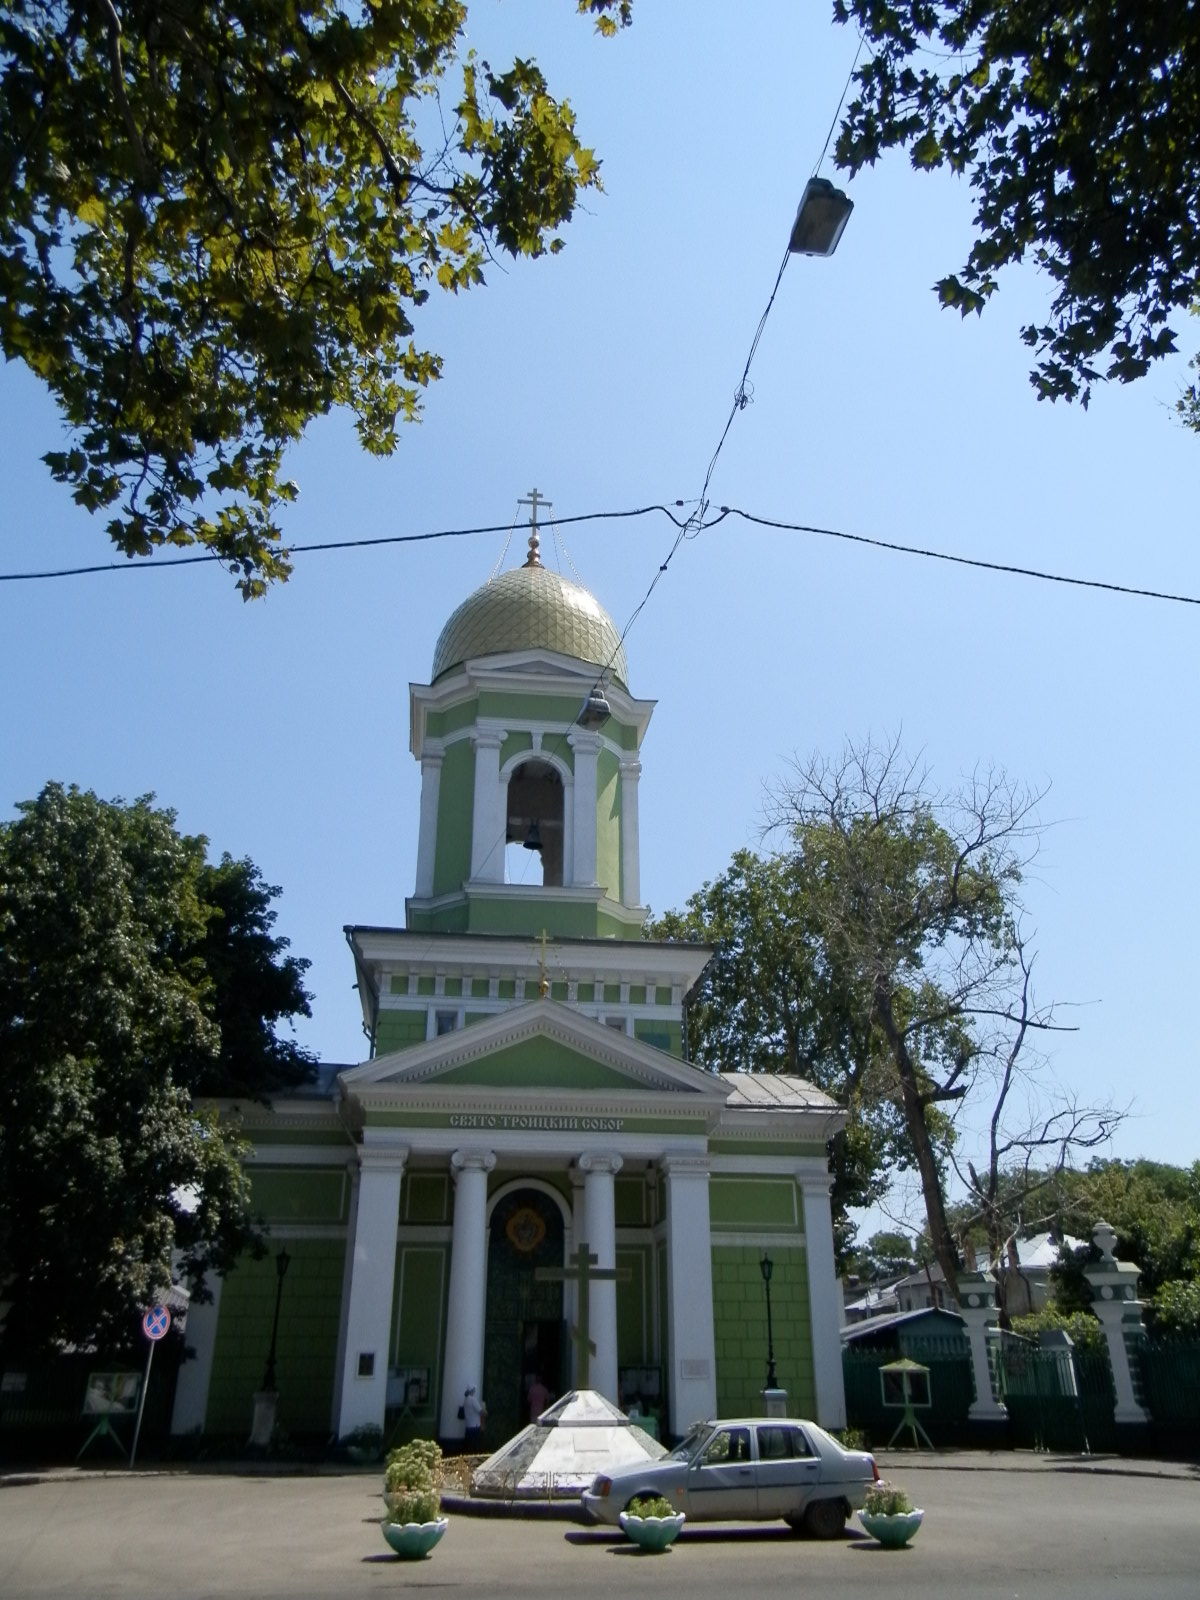 Pravoslavná řecká cerkva sv. Trojice